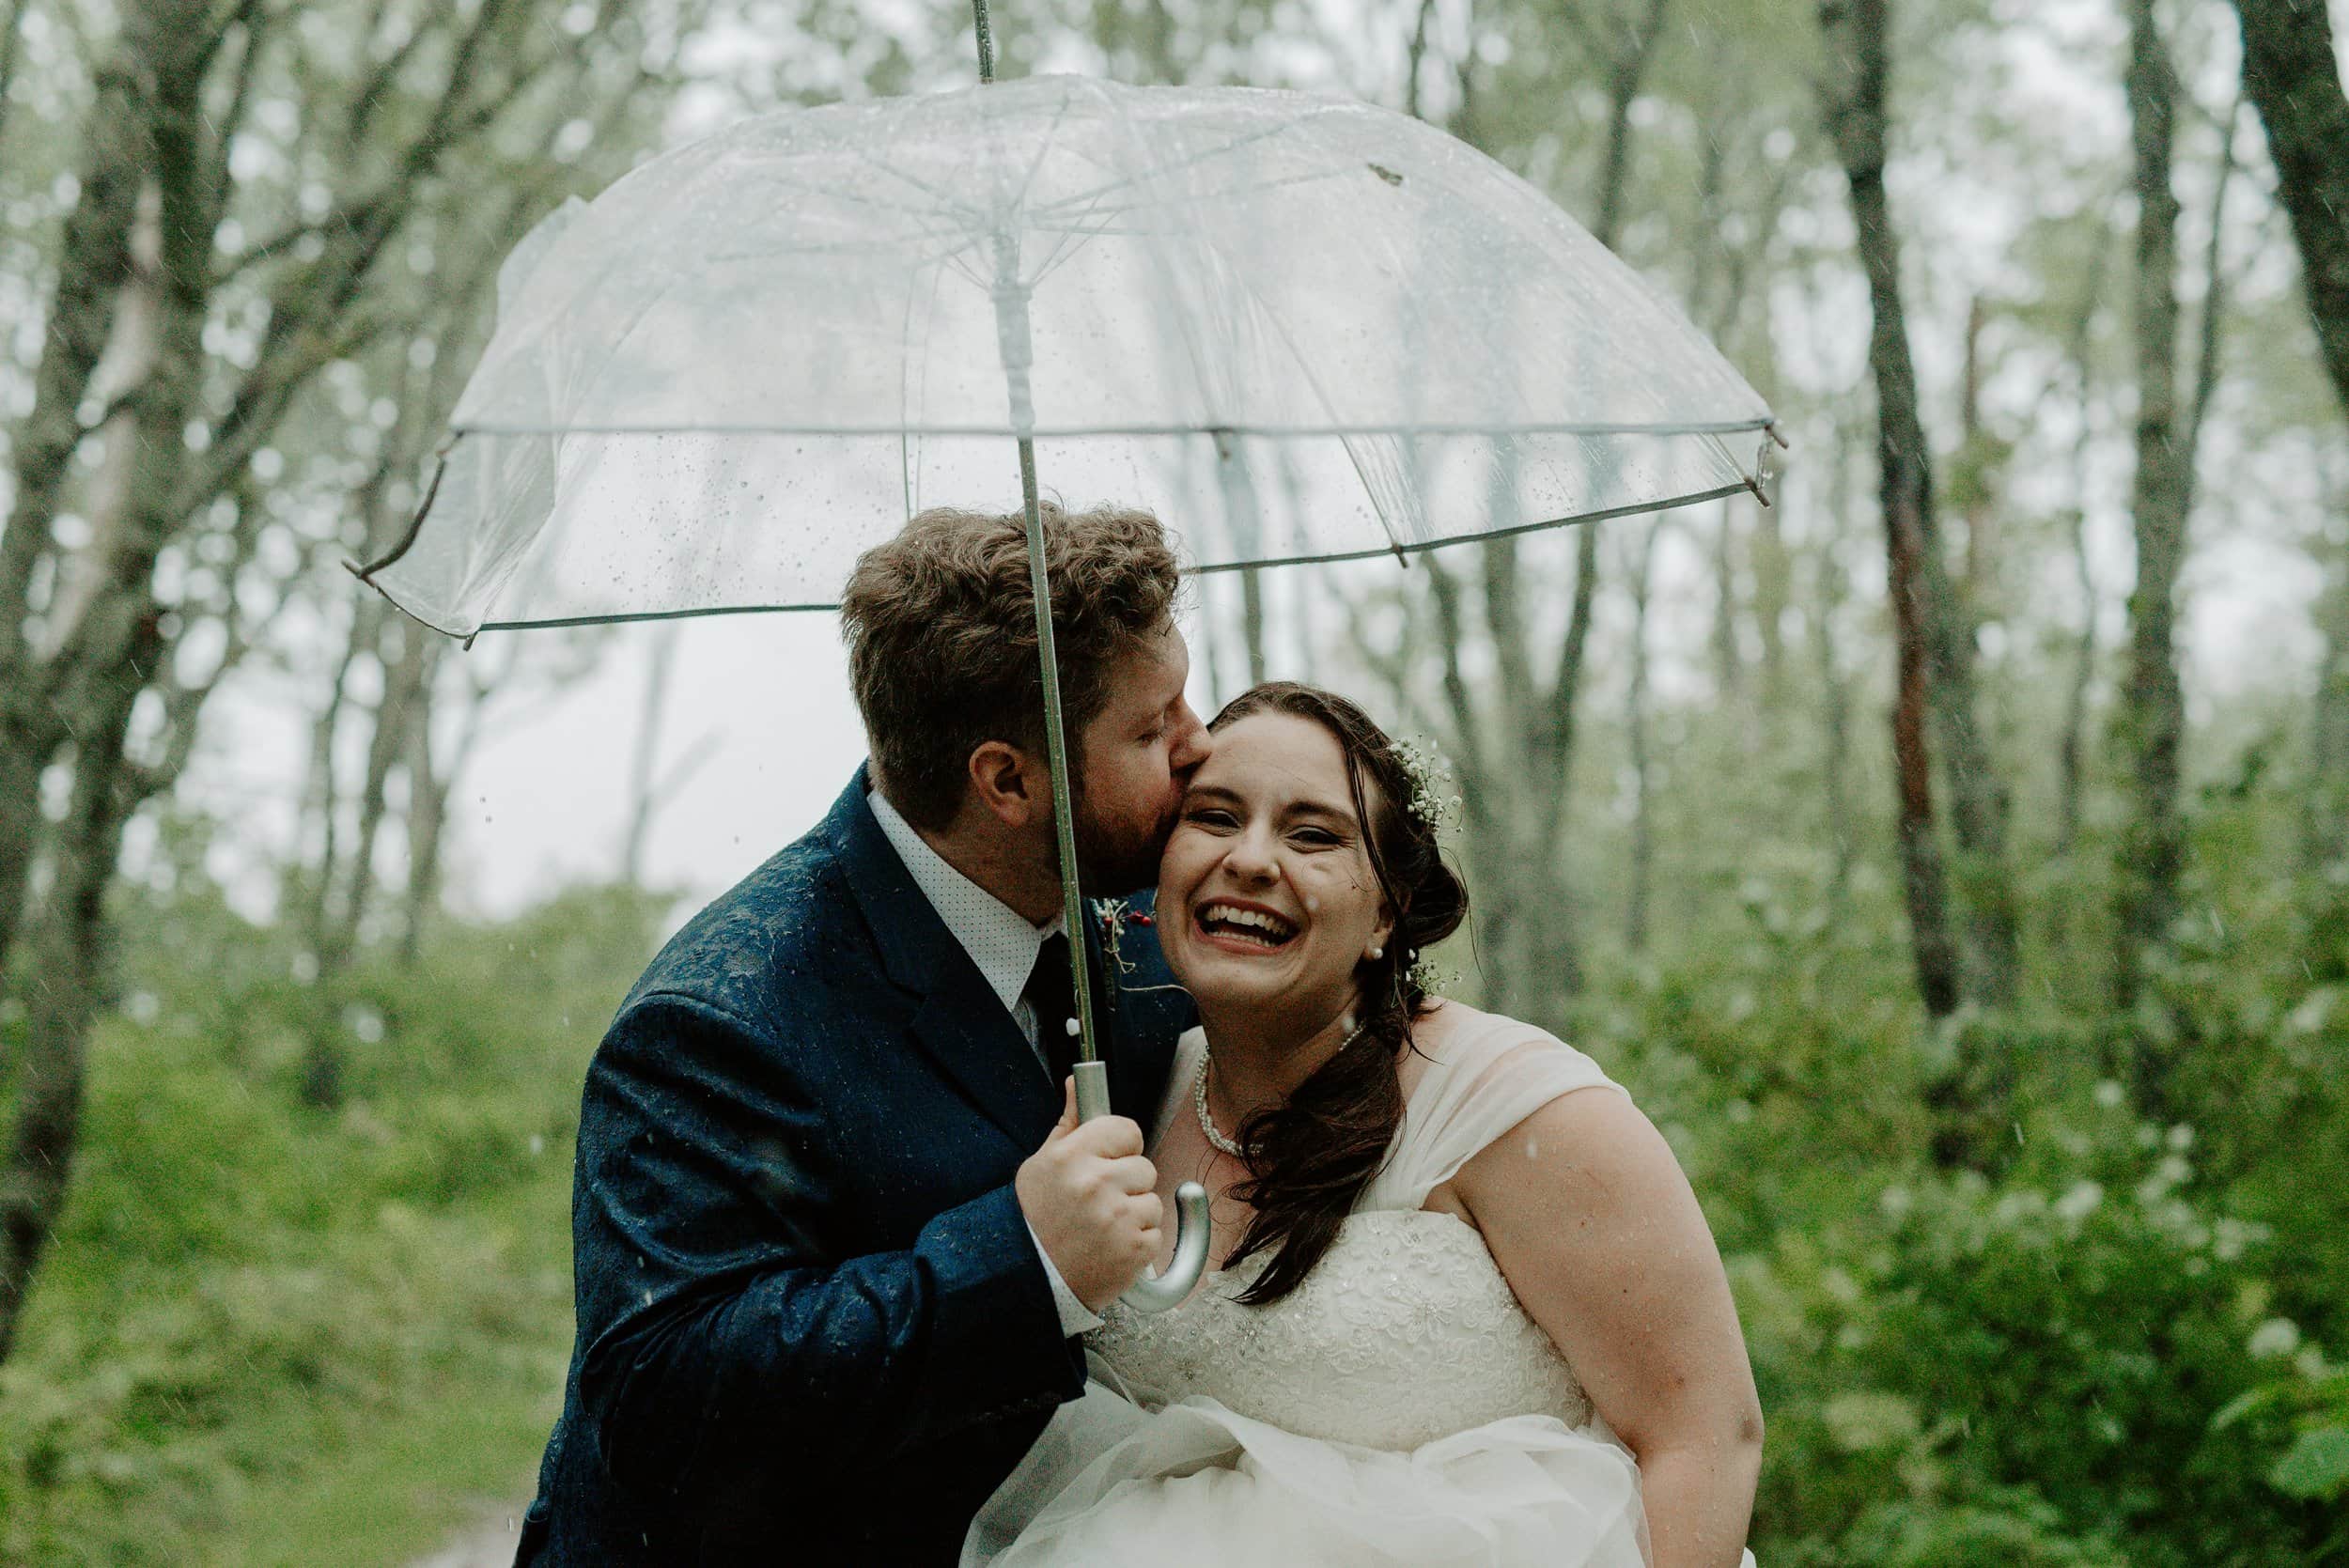 PEI Wedding photography - Michaela Bell Photography